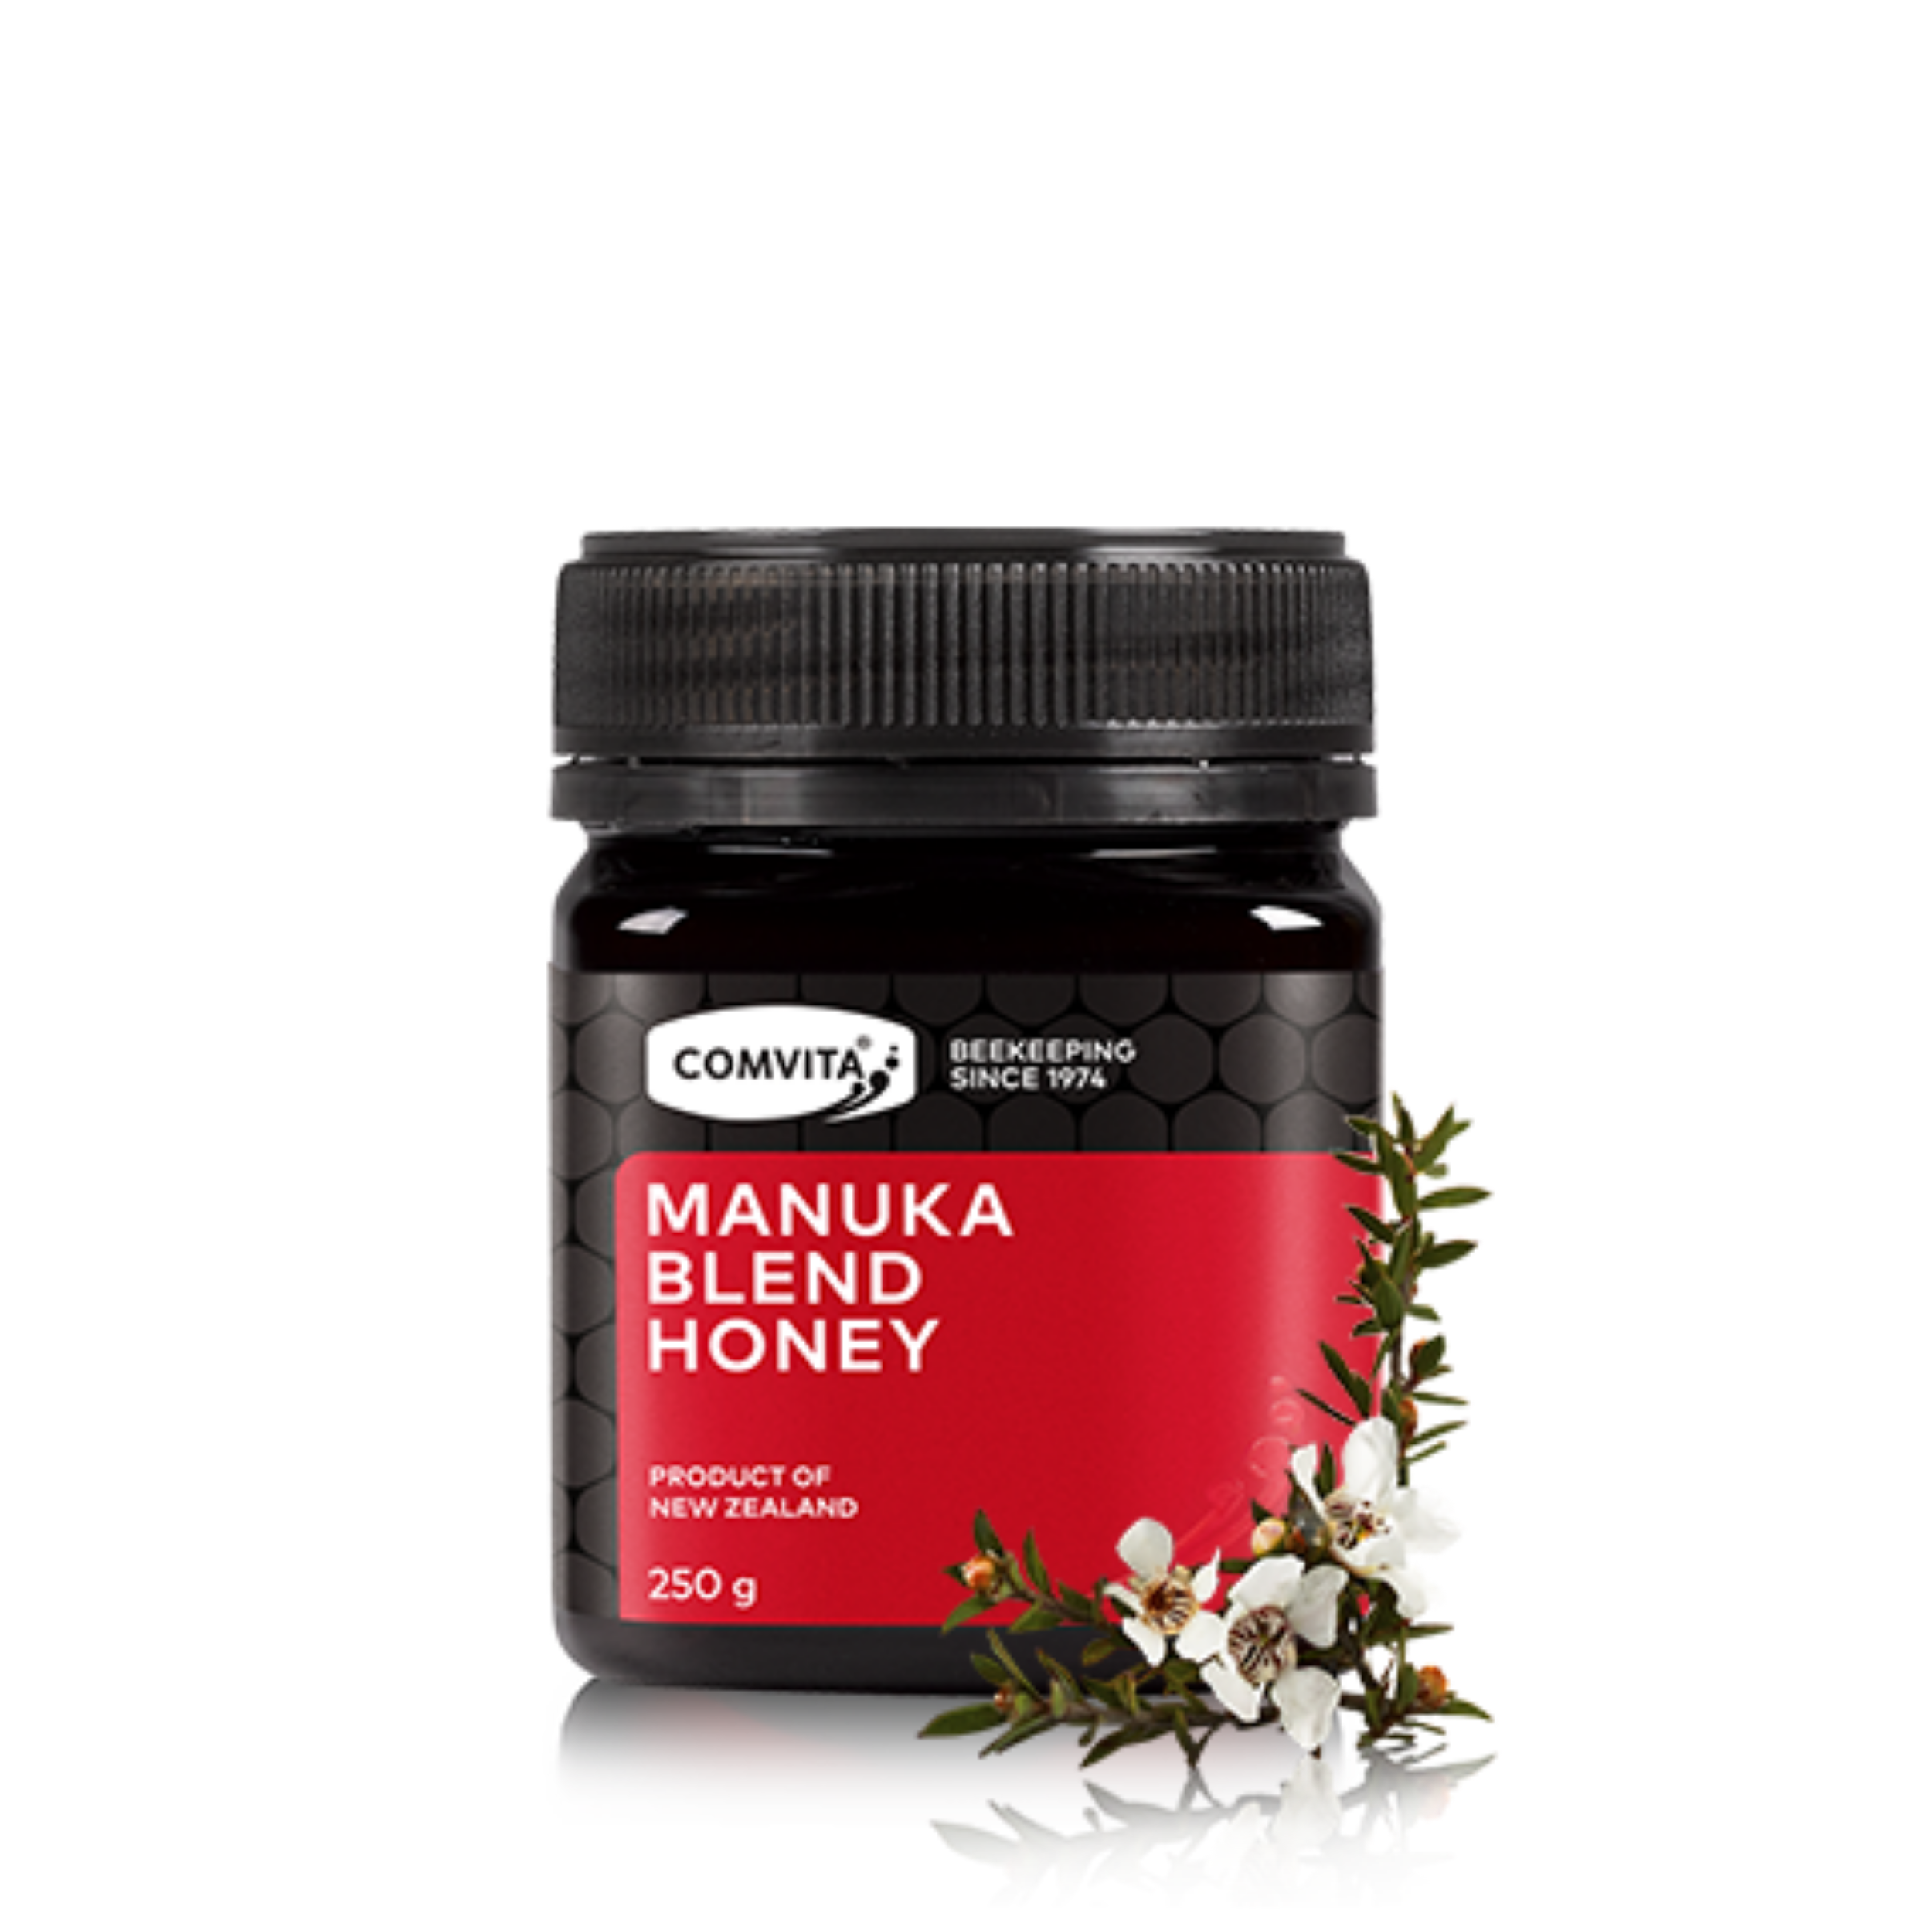 Comvita Manuka Blend Honey 250g